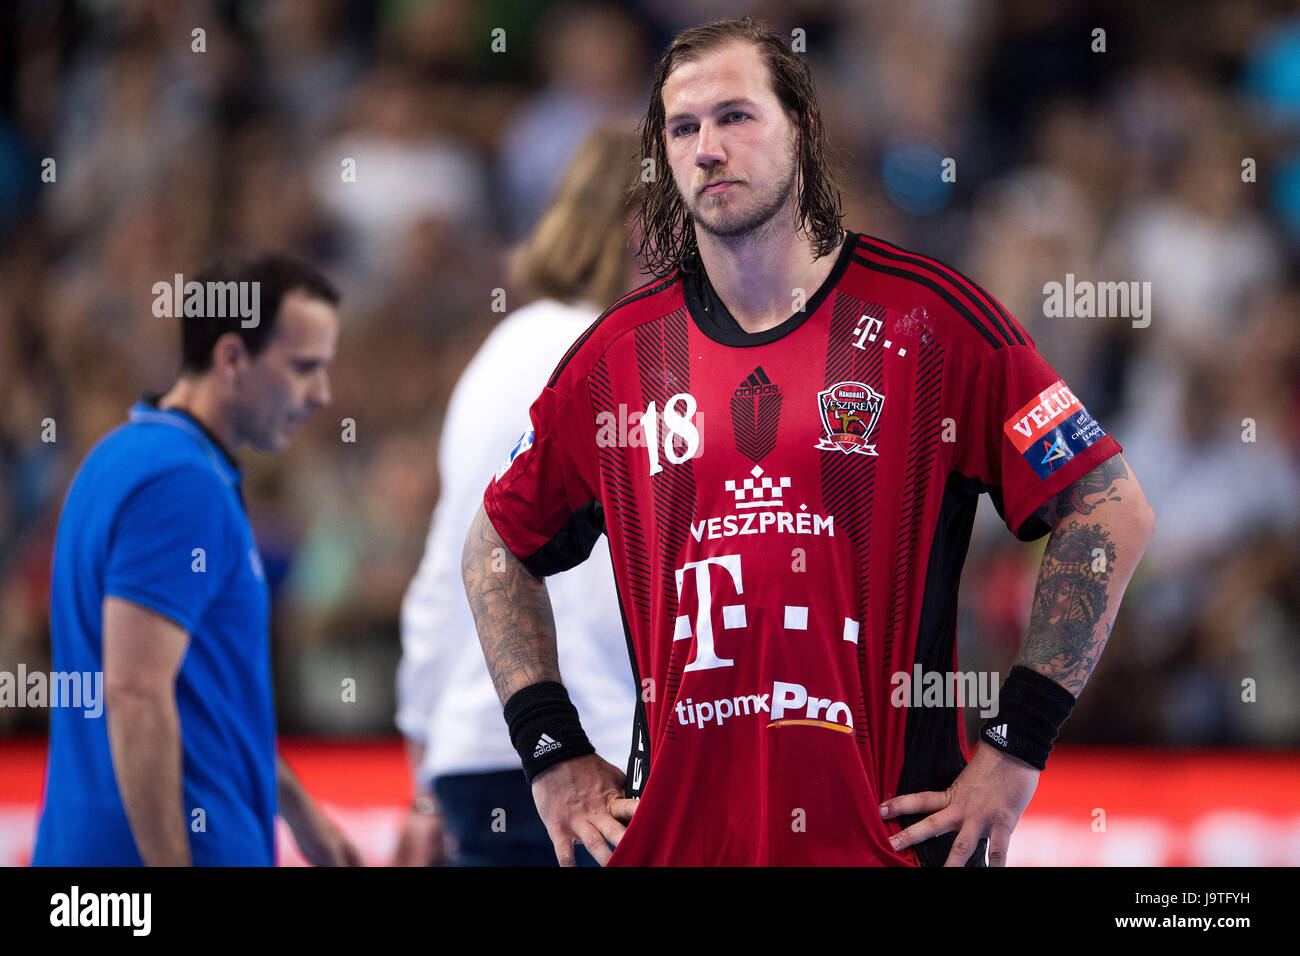 Veszprem es Andreas Nilsson reacciona después de la final de la Liga de  Campeones de balonmano Final Four la semifinal entre Telekom Veszprem y  París Saint Germain en el Lanxess-Arena en Colonia,